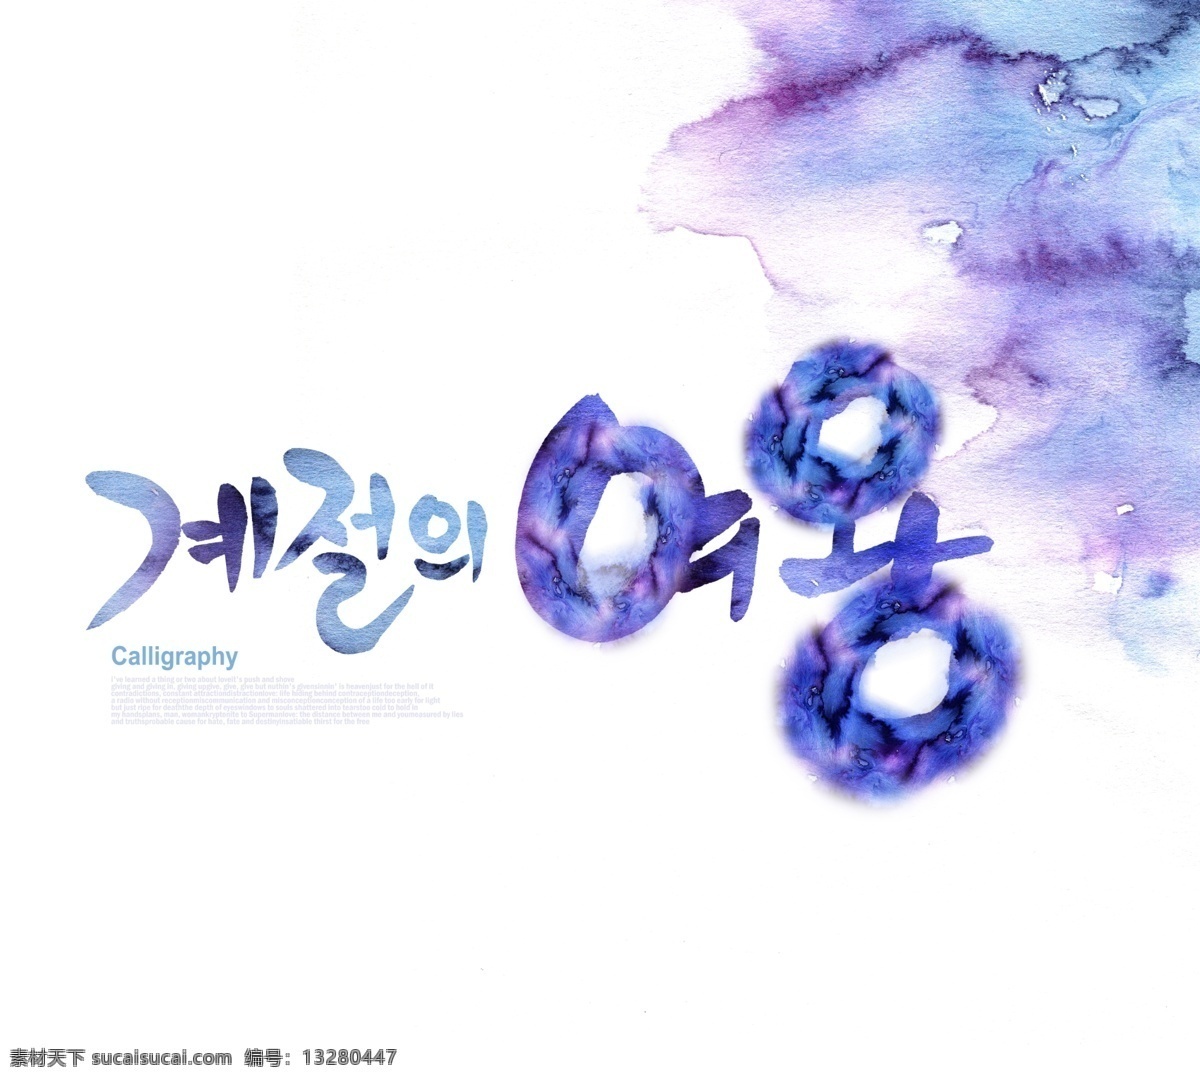 蓝紫色 水渍 背景 psd素材 背景素材 韩文 psd源文件